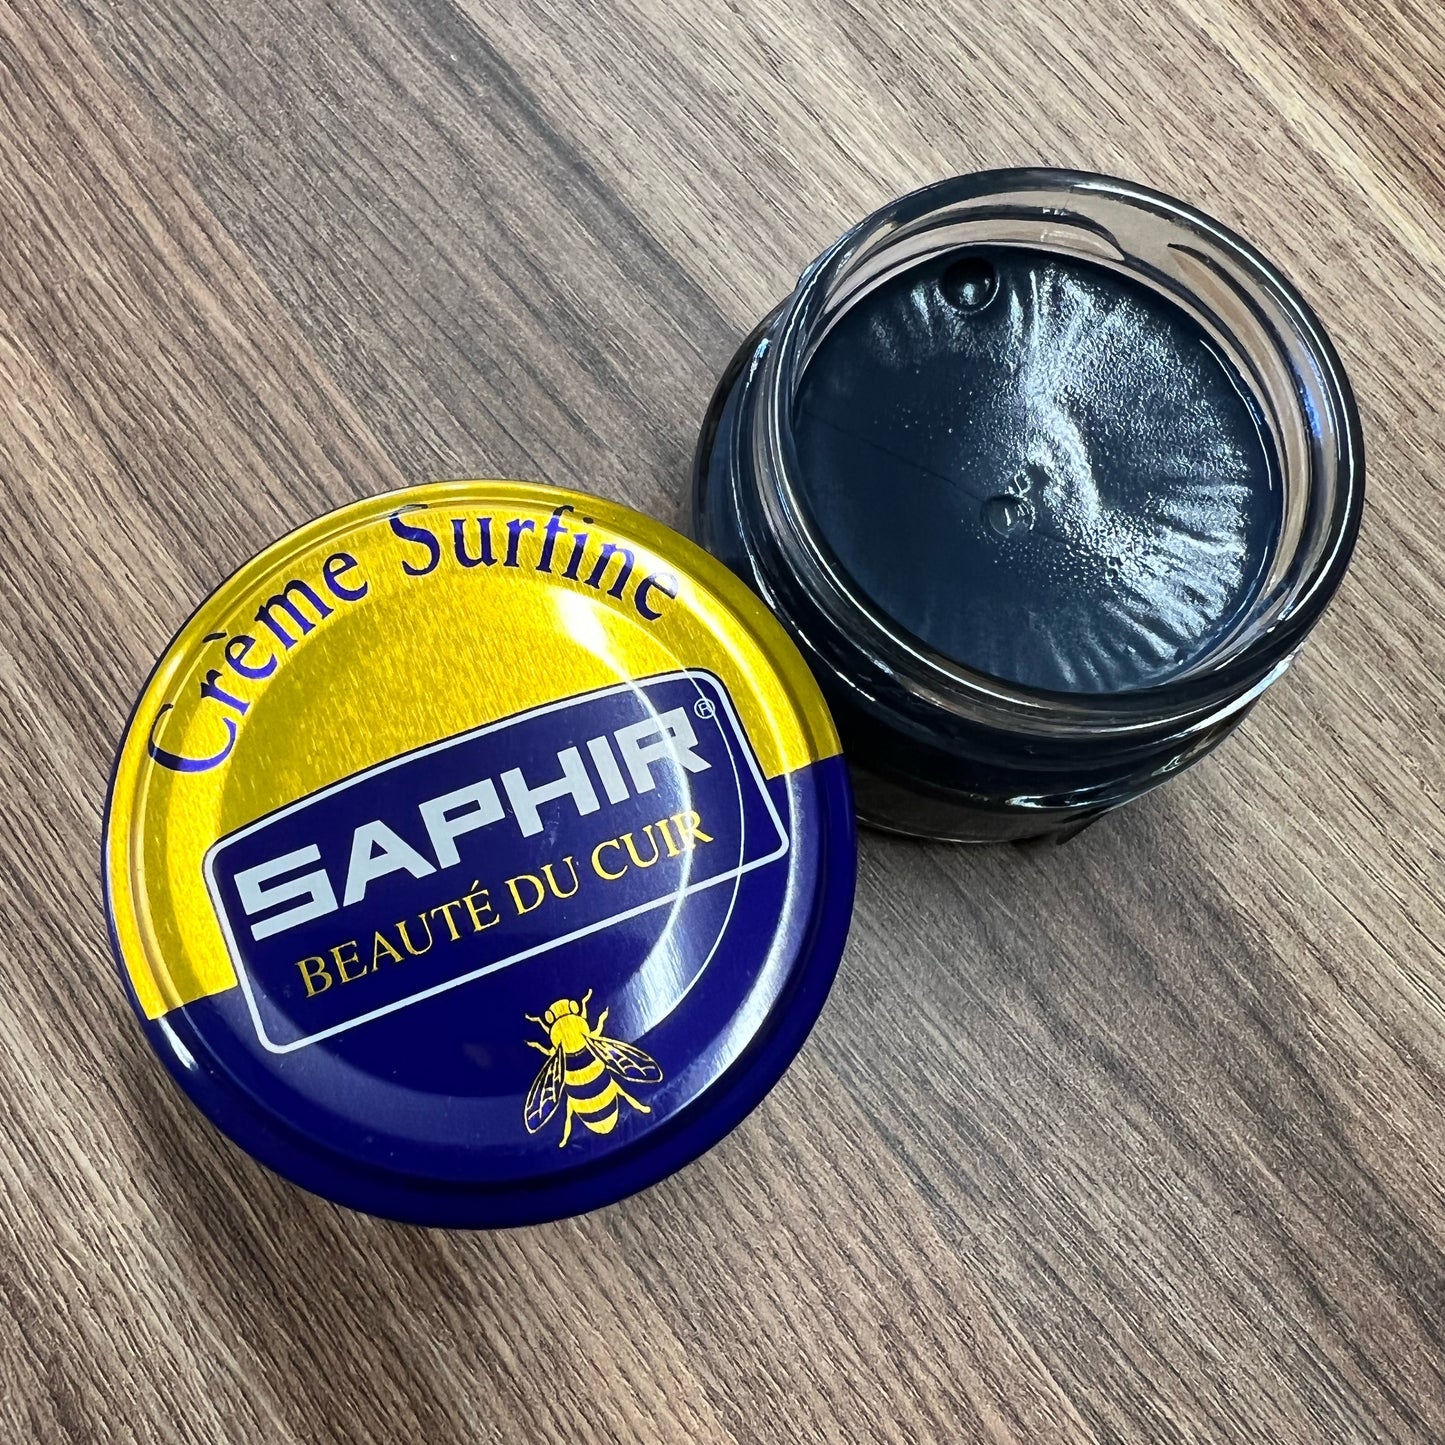 Saphir Crème Surfine — The Shoe Care Shop